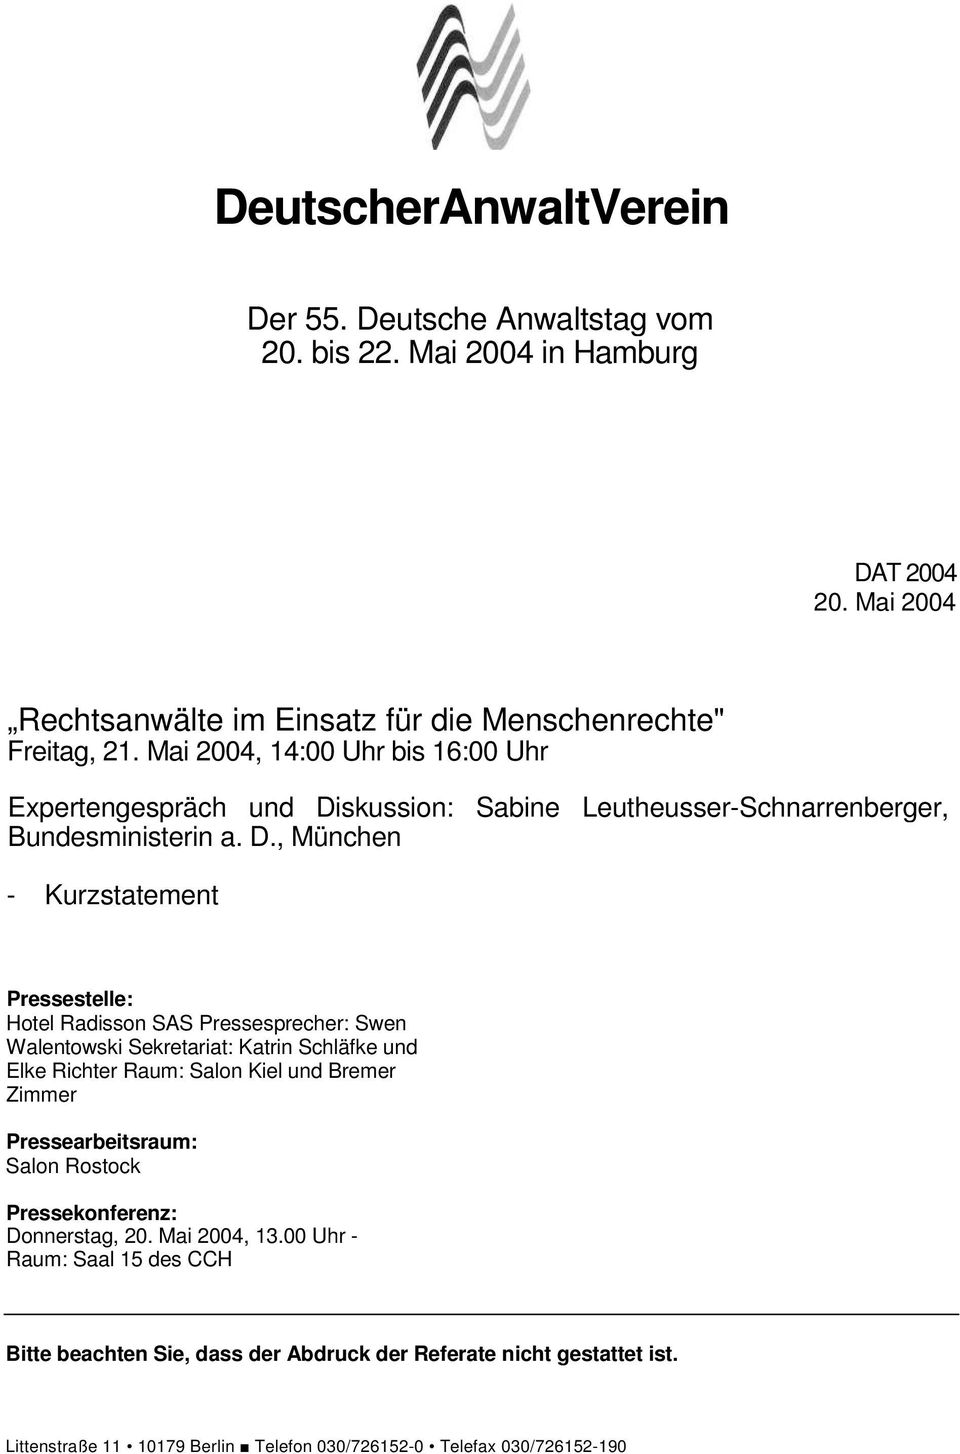 skussion: Sabine Leutheusser-Schnarrenberger, Bundesministerin a. D.